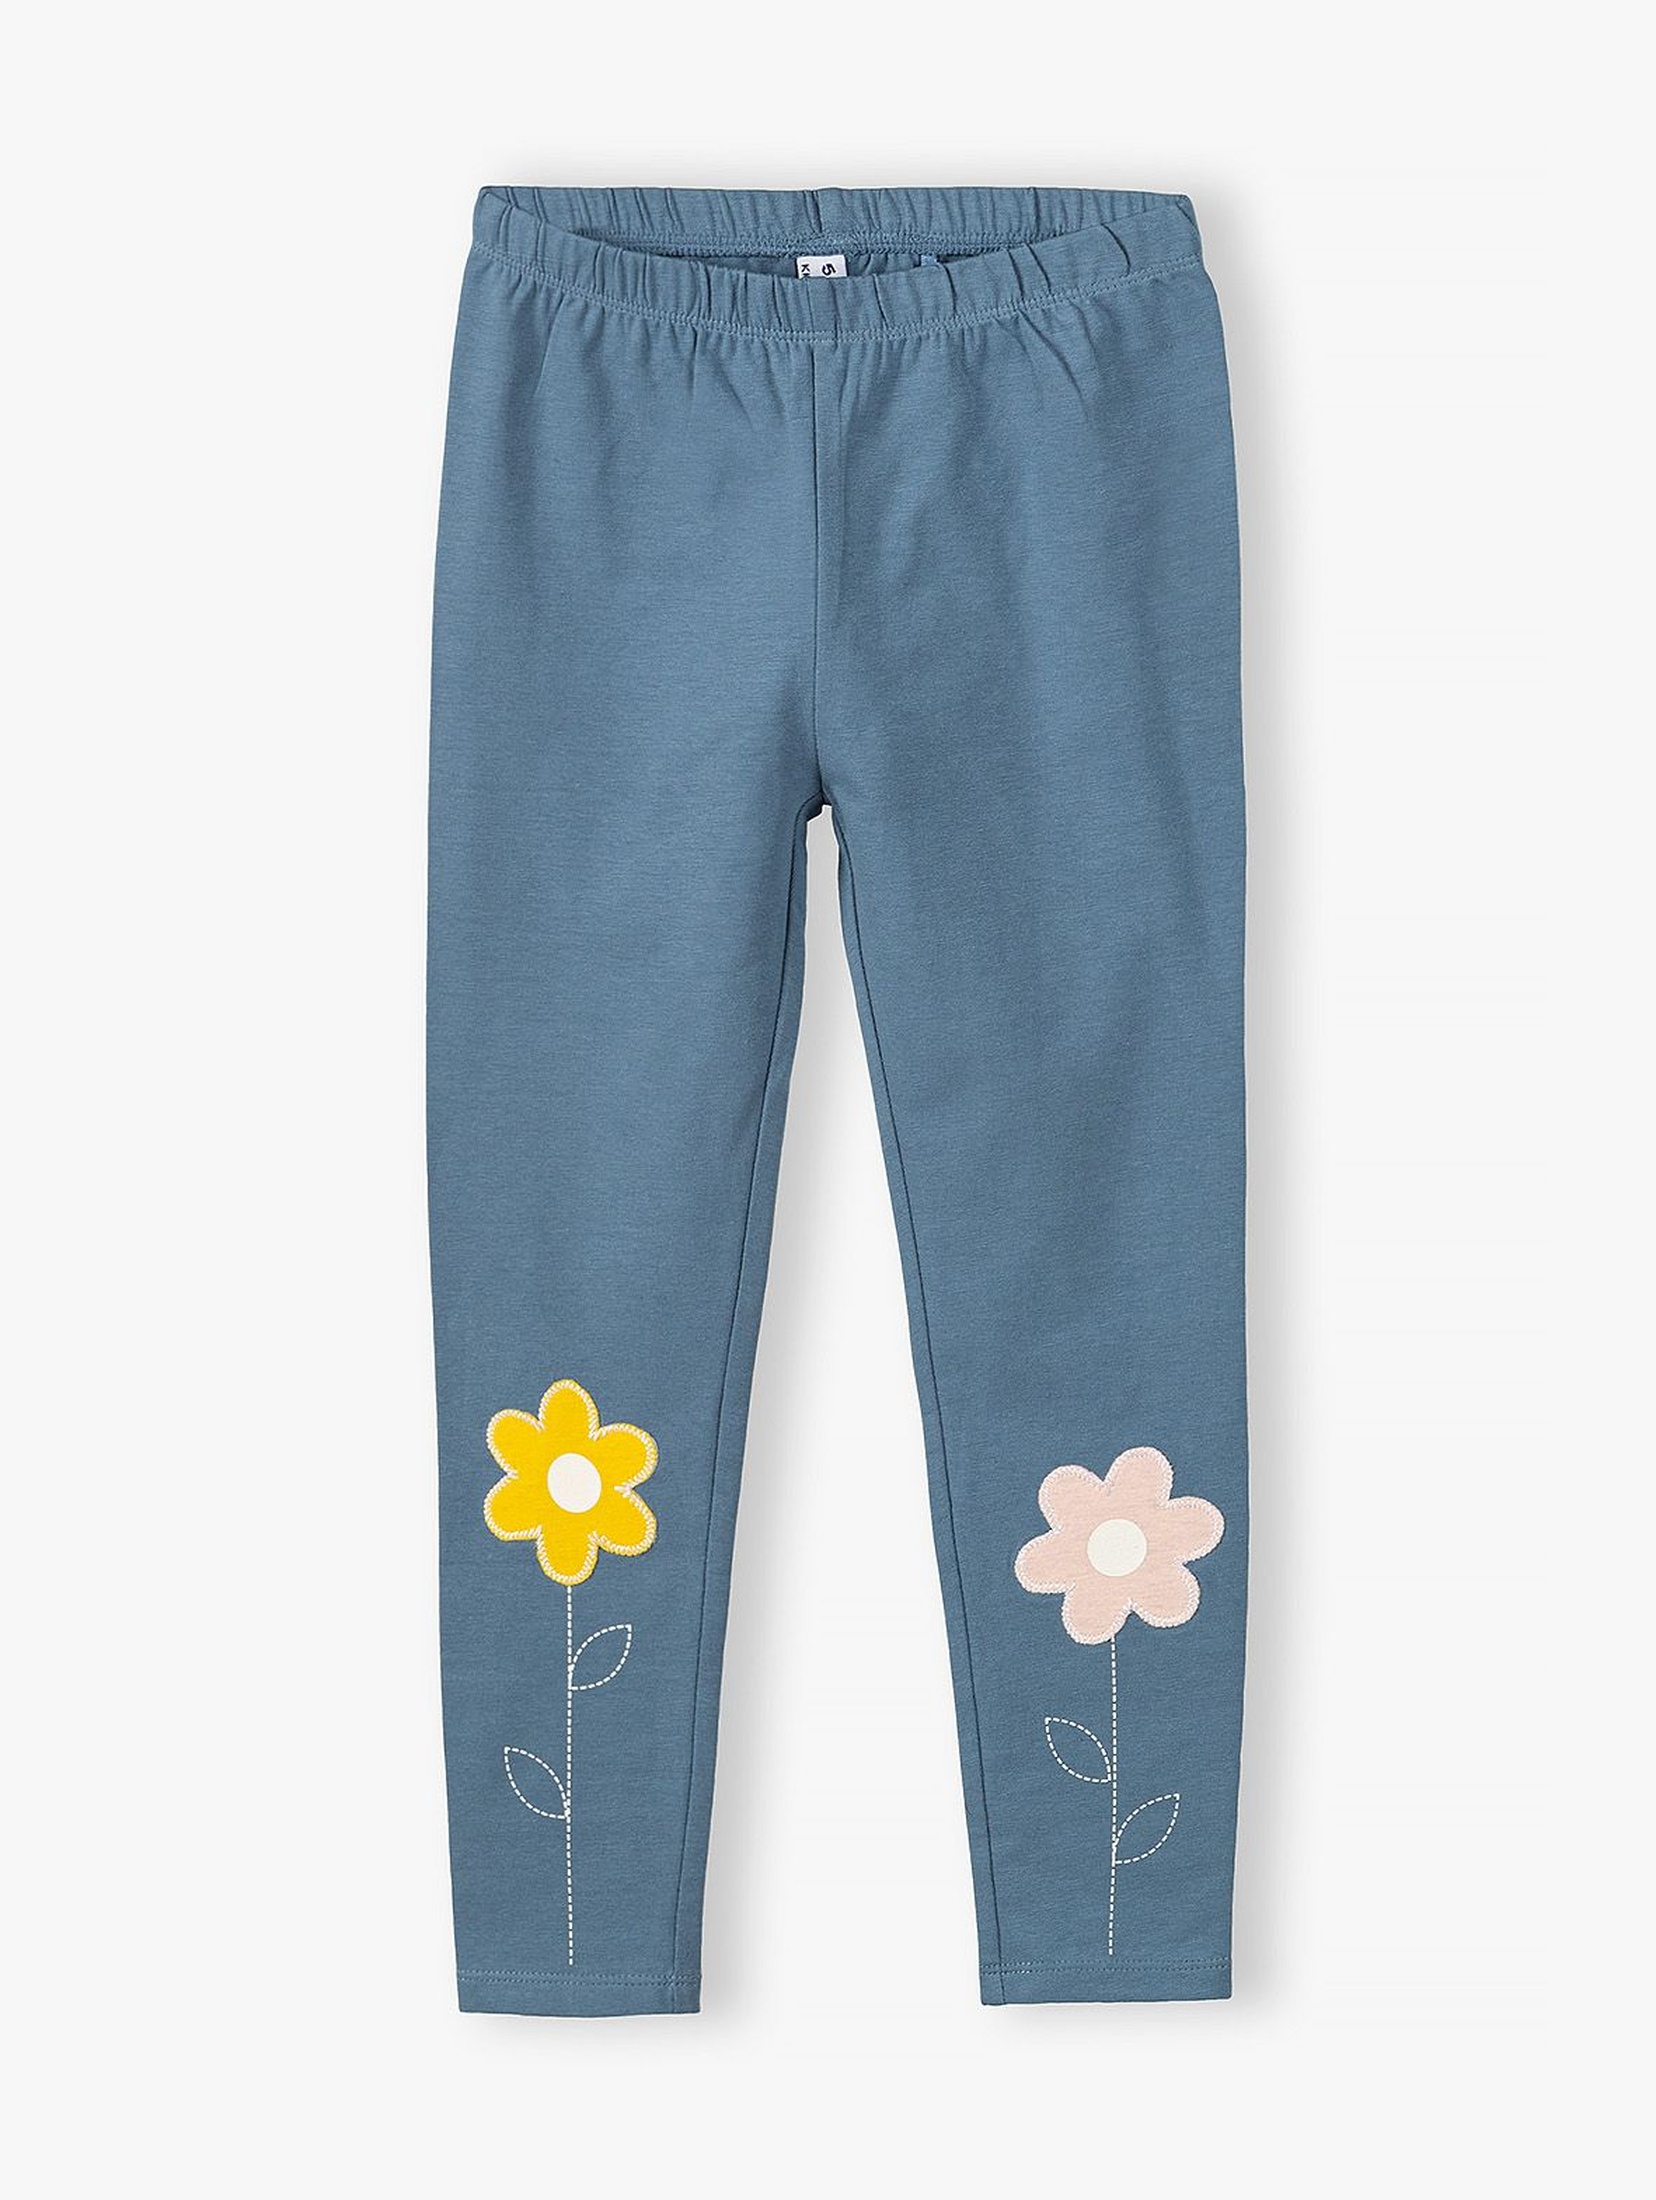 Leginsy dziewczęce z kwiatkami na nogawkach - niebieskie